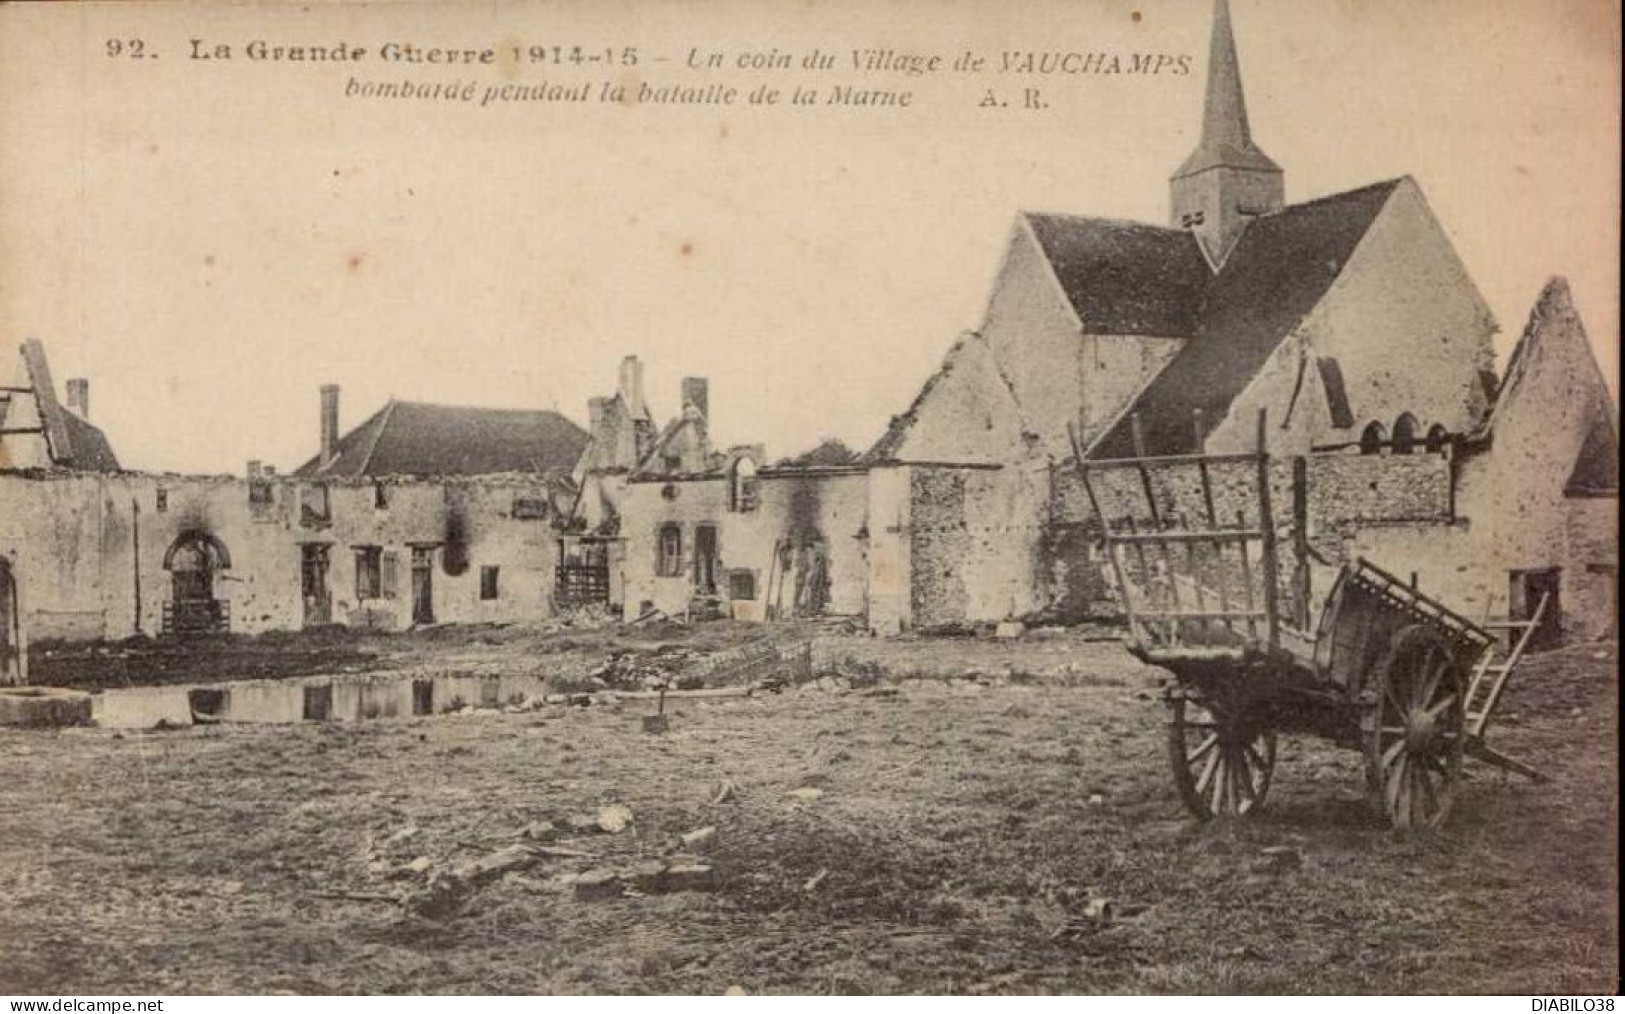 UN COIN DU VILLAGE DE VAUCHANPS BOMBARDE PENDANT LA BATAILLE DE LA MARNE - War 1914-18